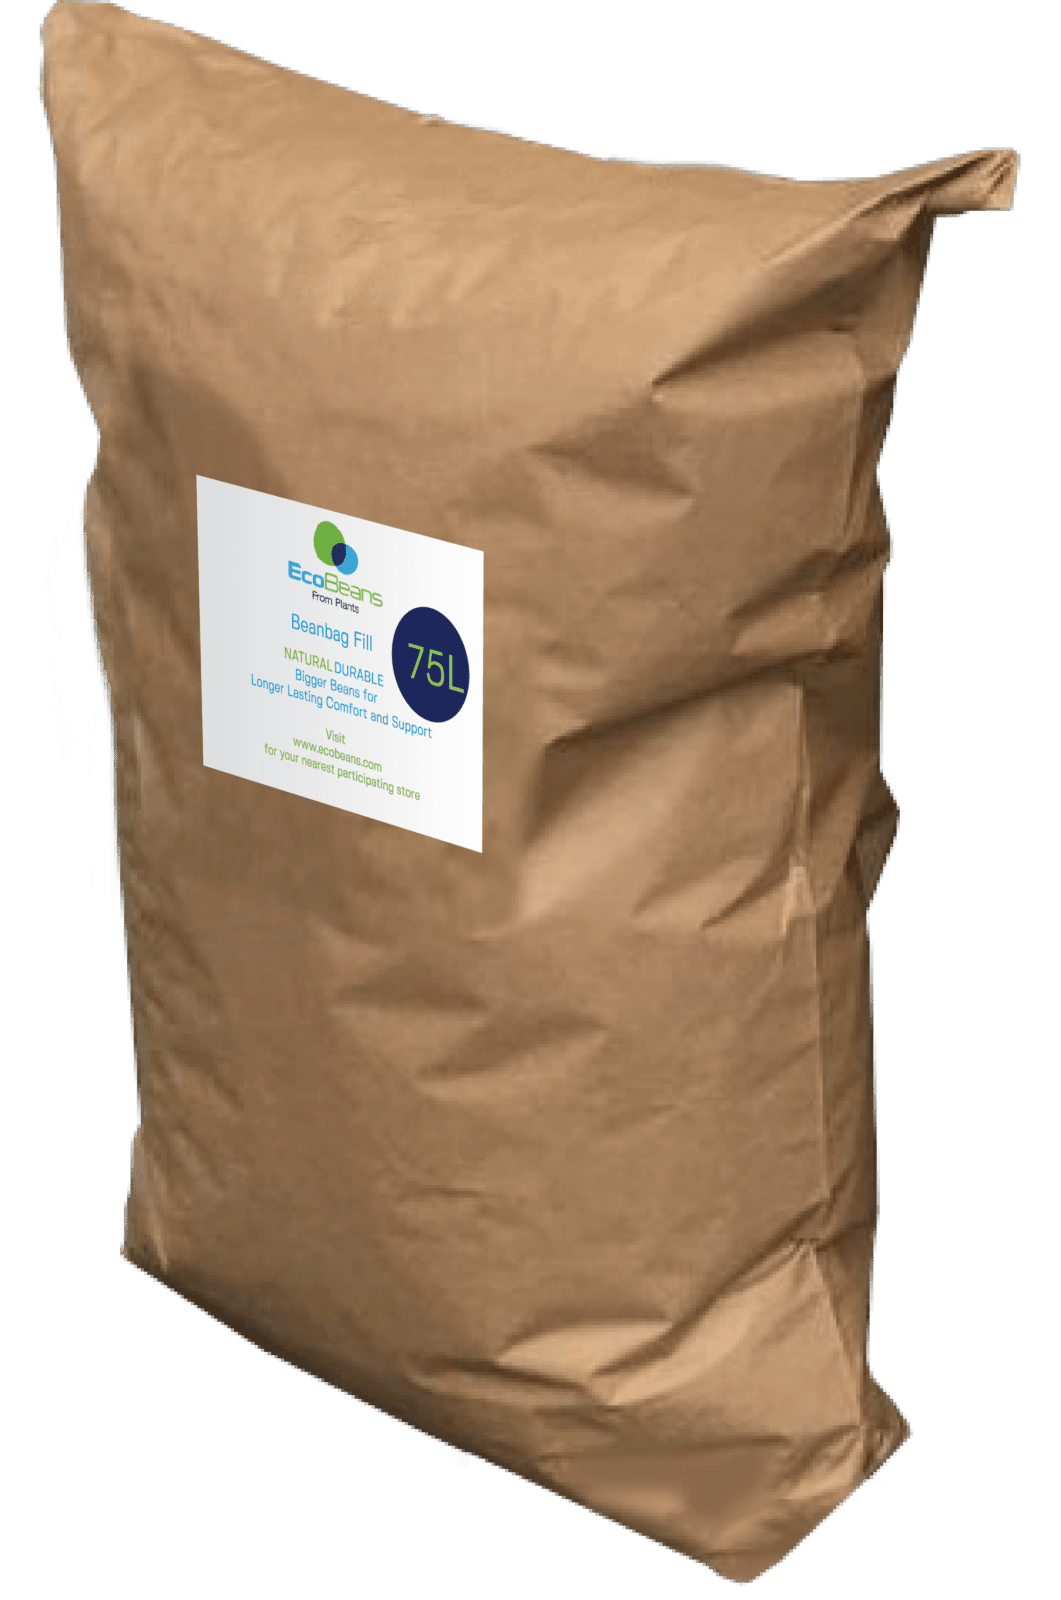 EXPOL 25L Earth Green Beans Bean Bag Fill - Bunnings New Zealand